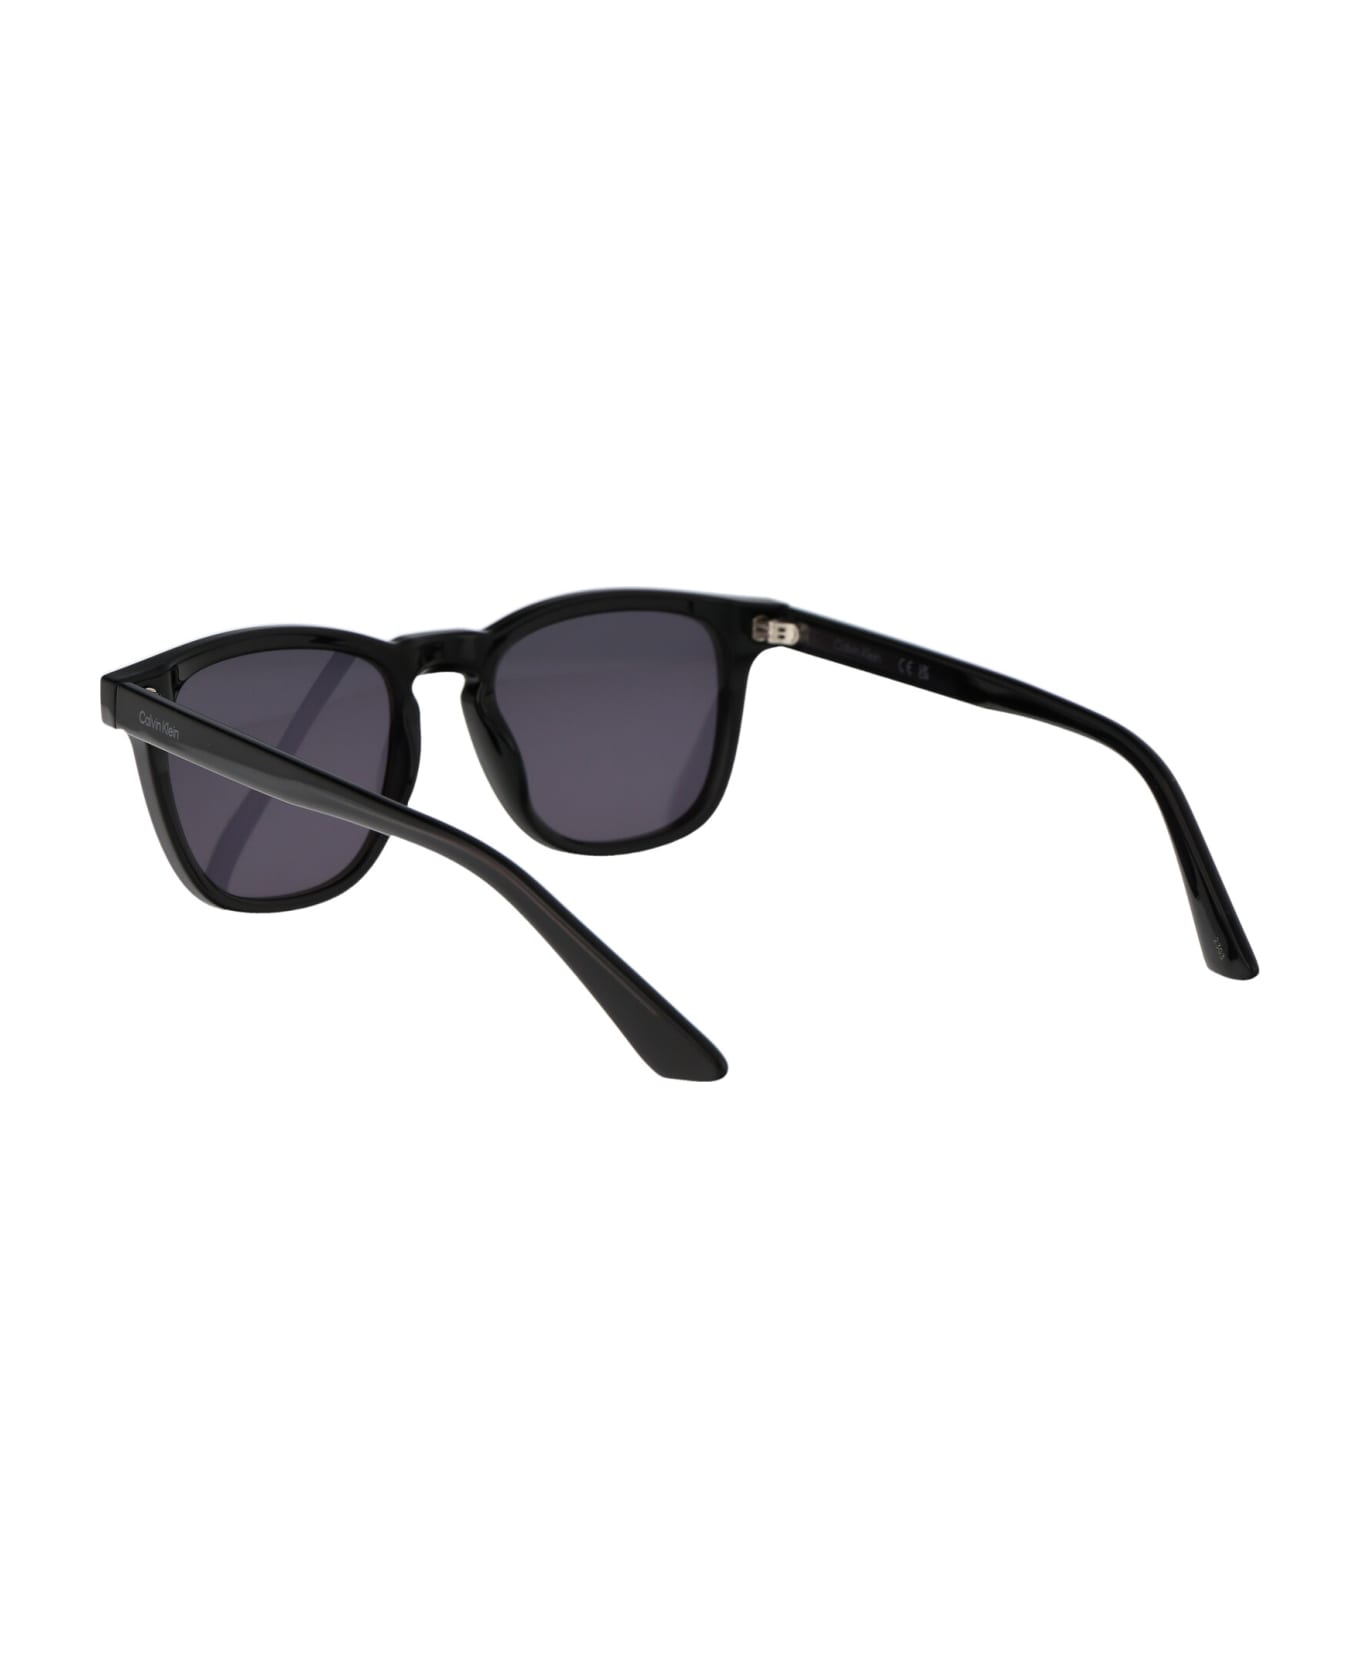 Calvin Klein Ck23505s Sunglasses - 059 BLACK サングラス